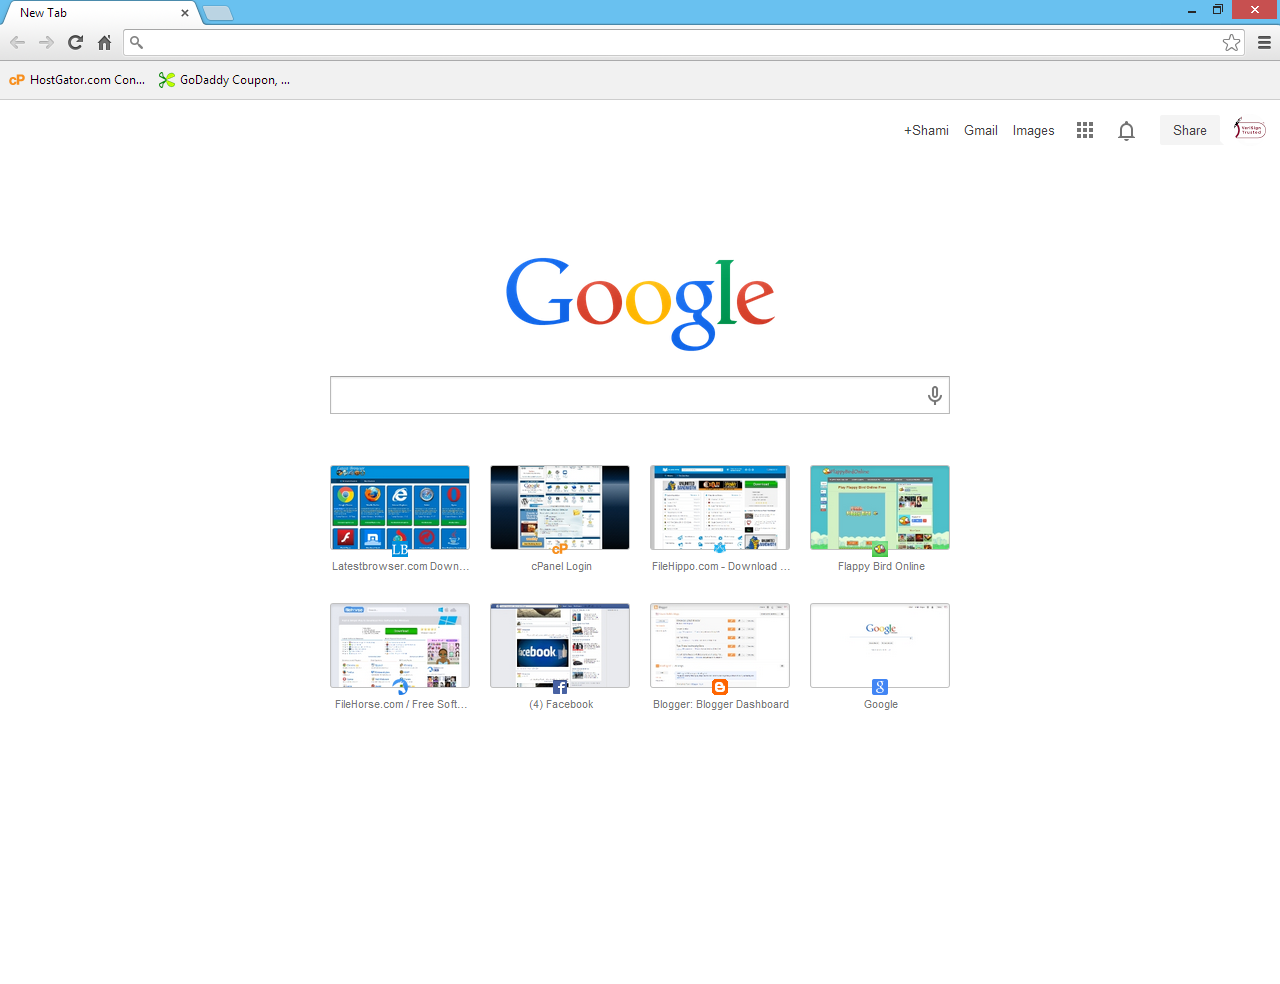 Google Homepage Wallpaper - WallpaperSafari1280 x 984